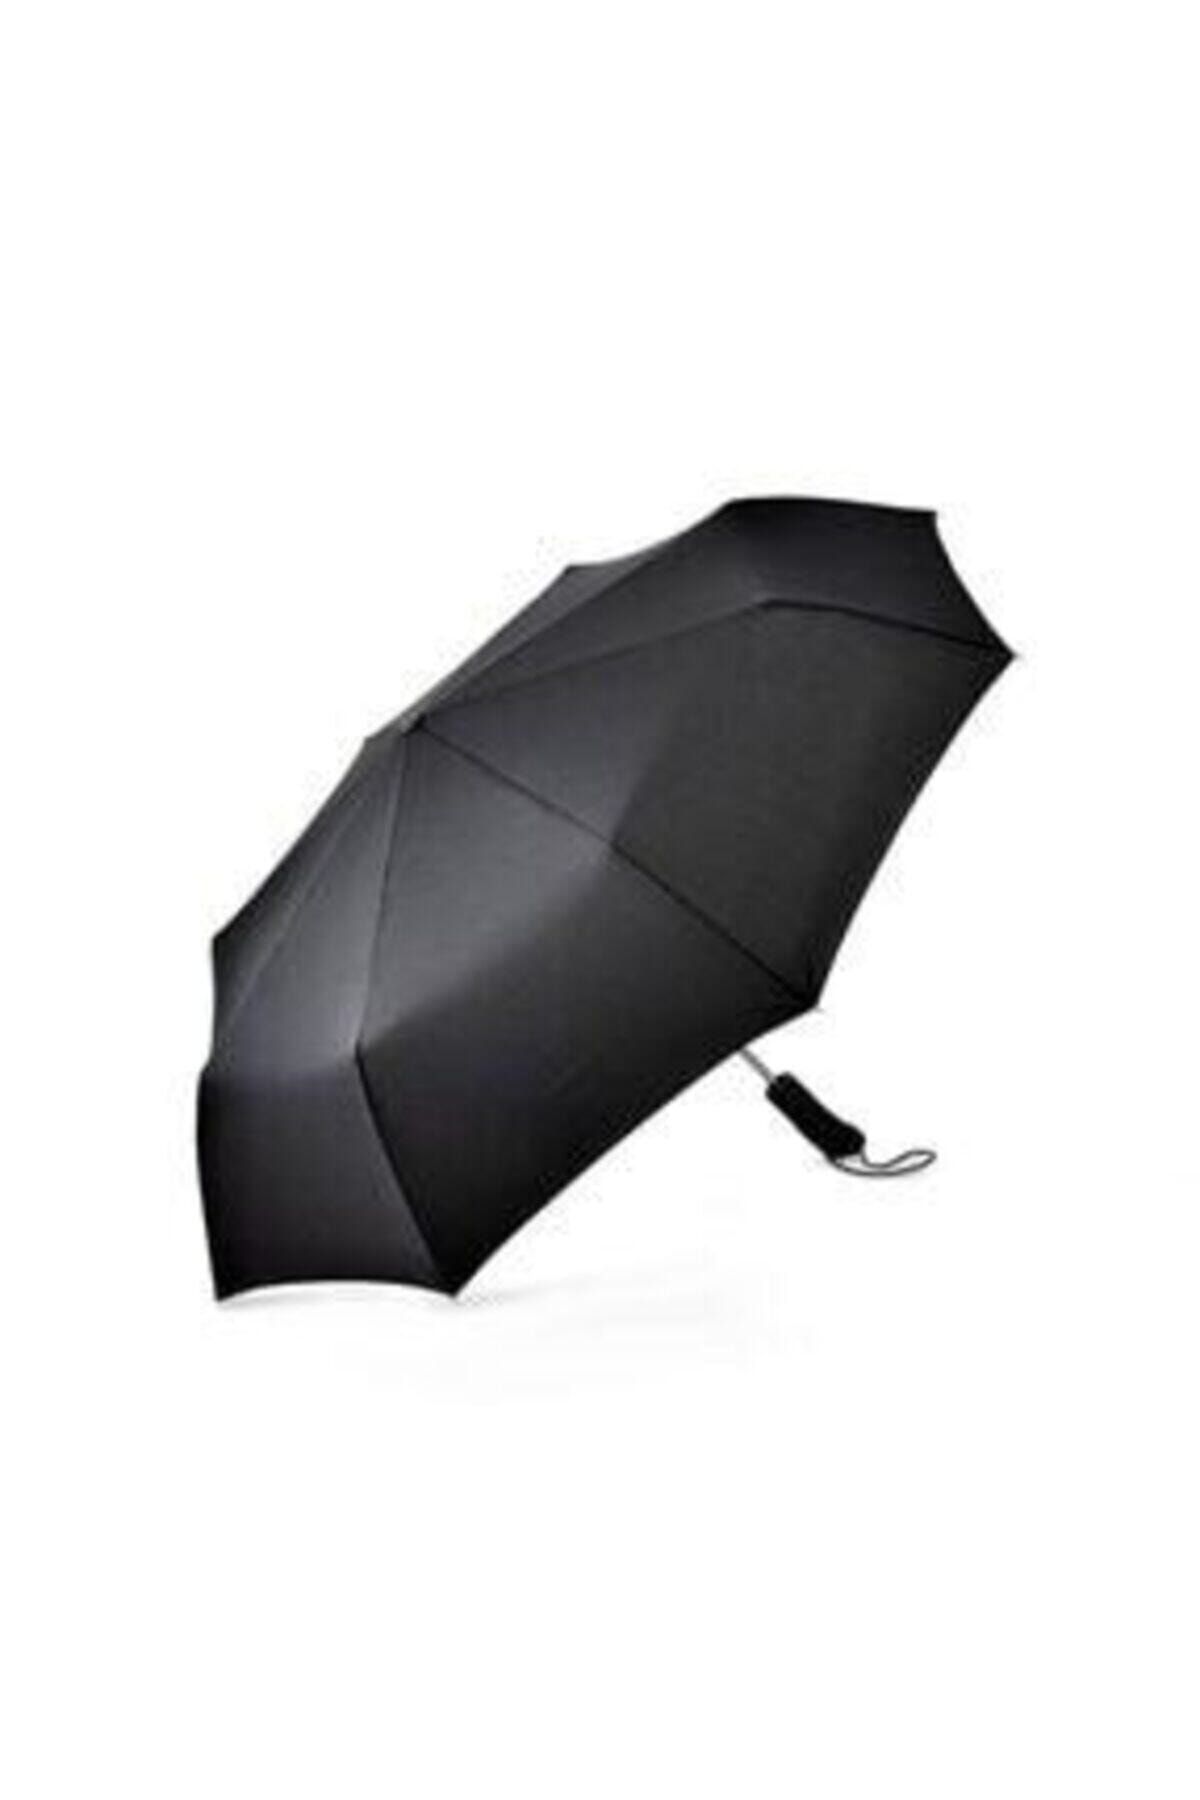 Demirhan Unisex Siyah Tam Otomatik Rüzgarda Kırılmayan Şemsiye To